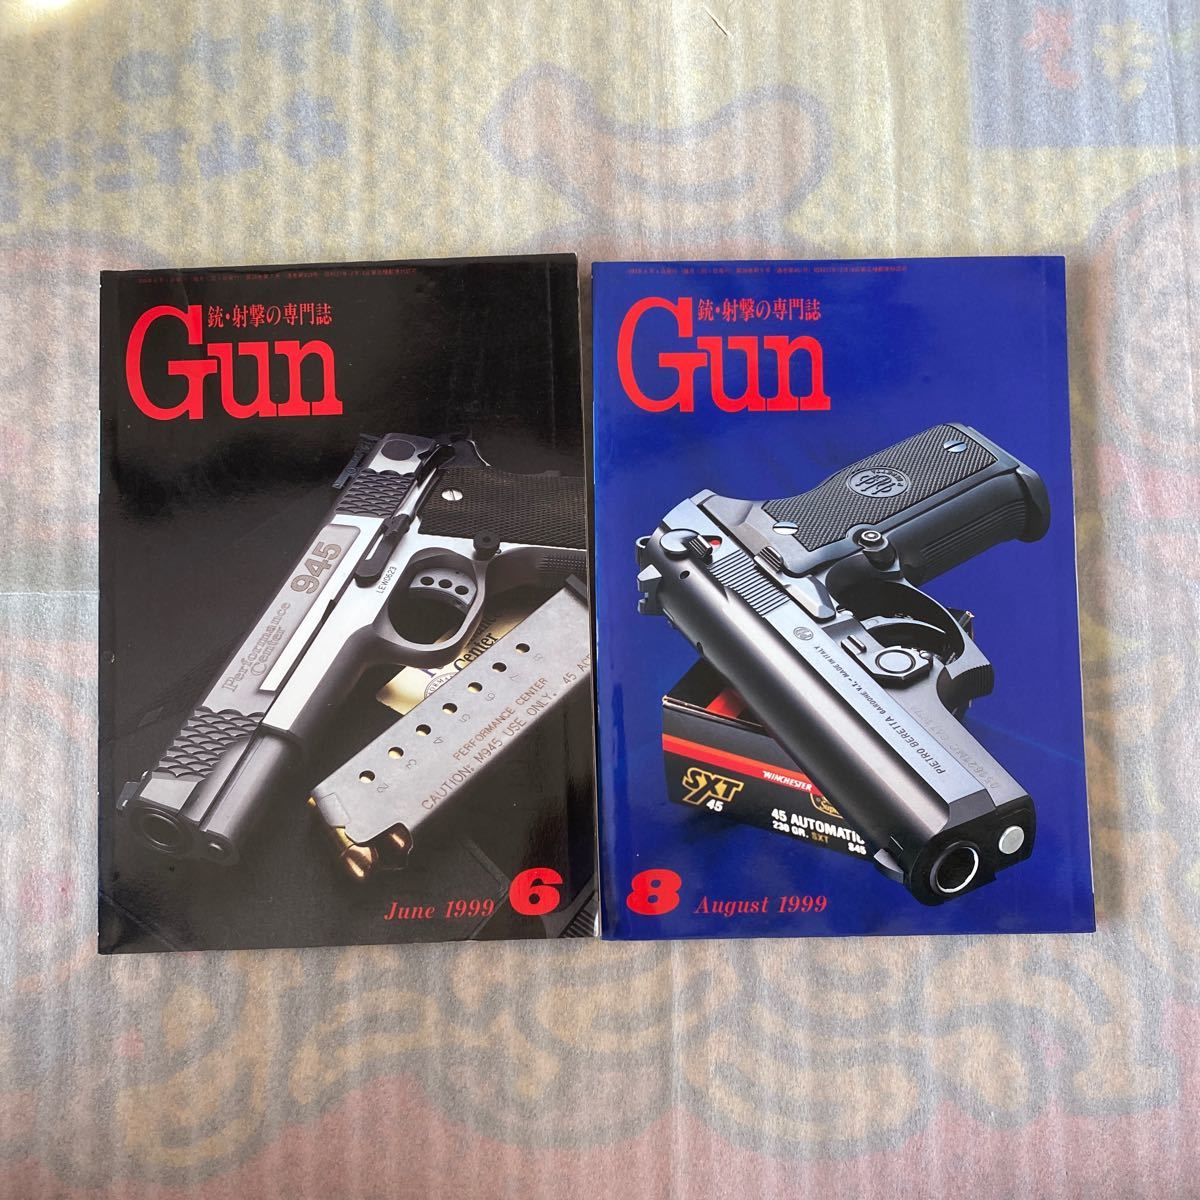 月刊GUN 射撃の専門誌 1999年6月 8月号 全2冊 月刊ガン 古本_画像1